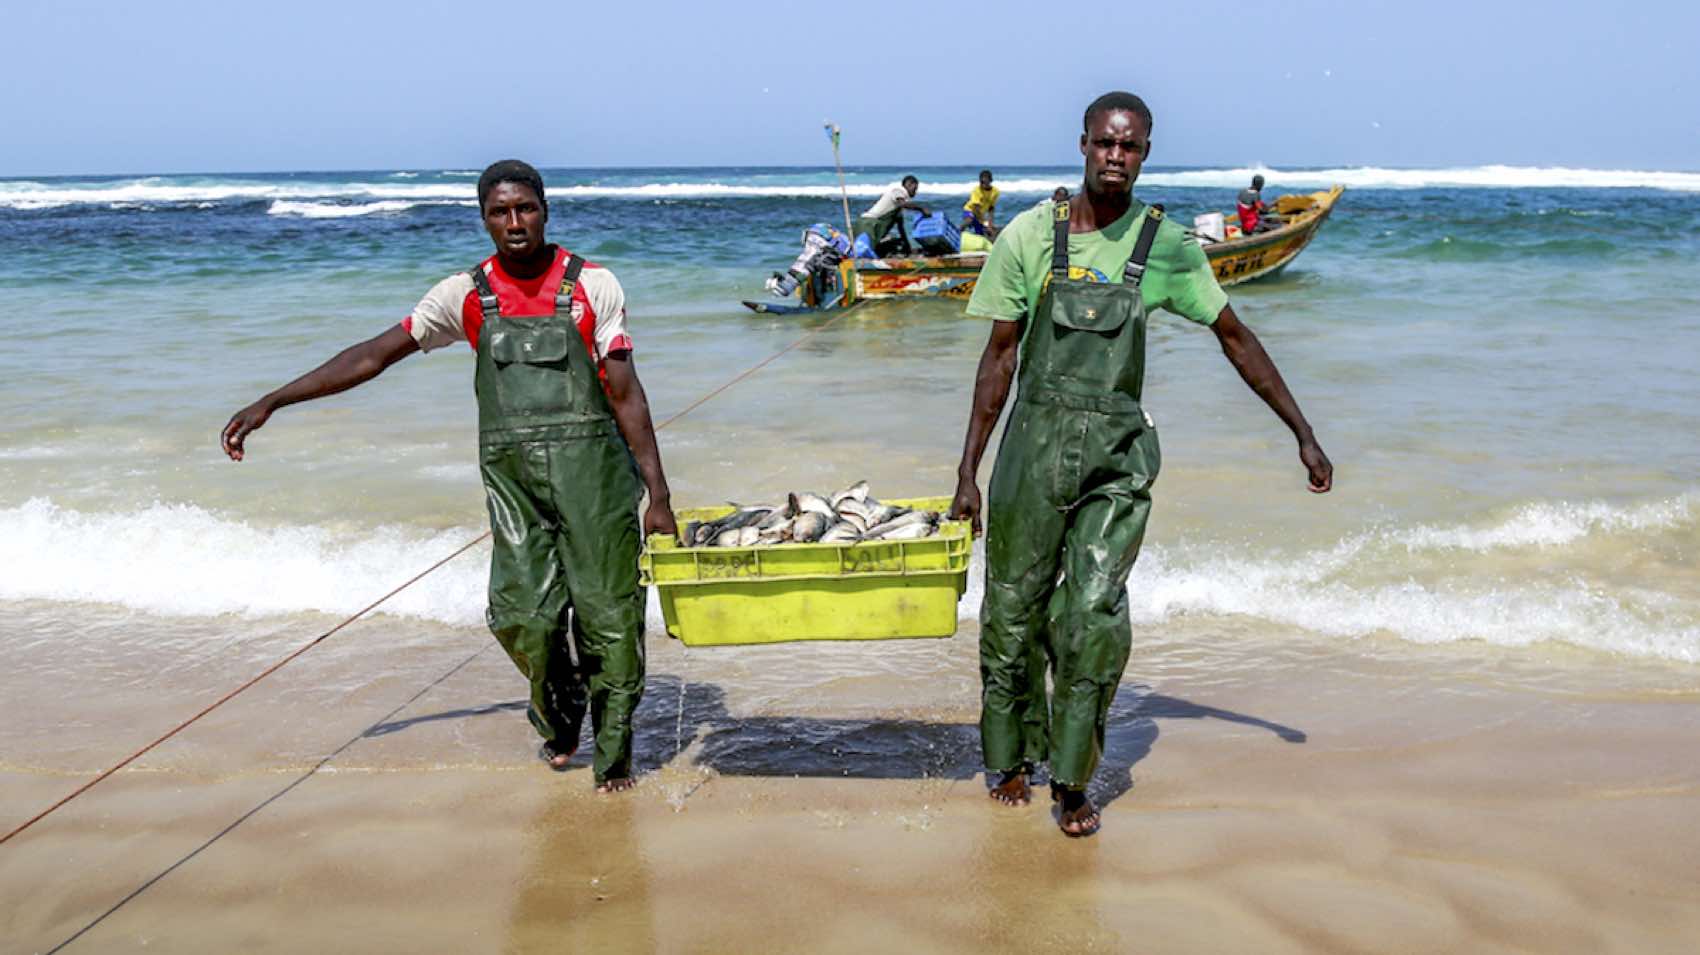 Sjømat er en viktig del av mat-tilbudet i Senegal. Her kommer dagens fangst